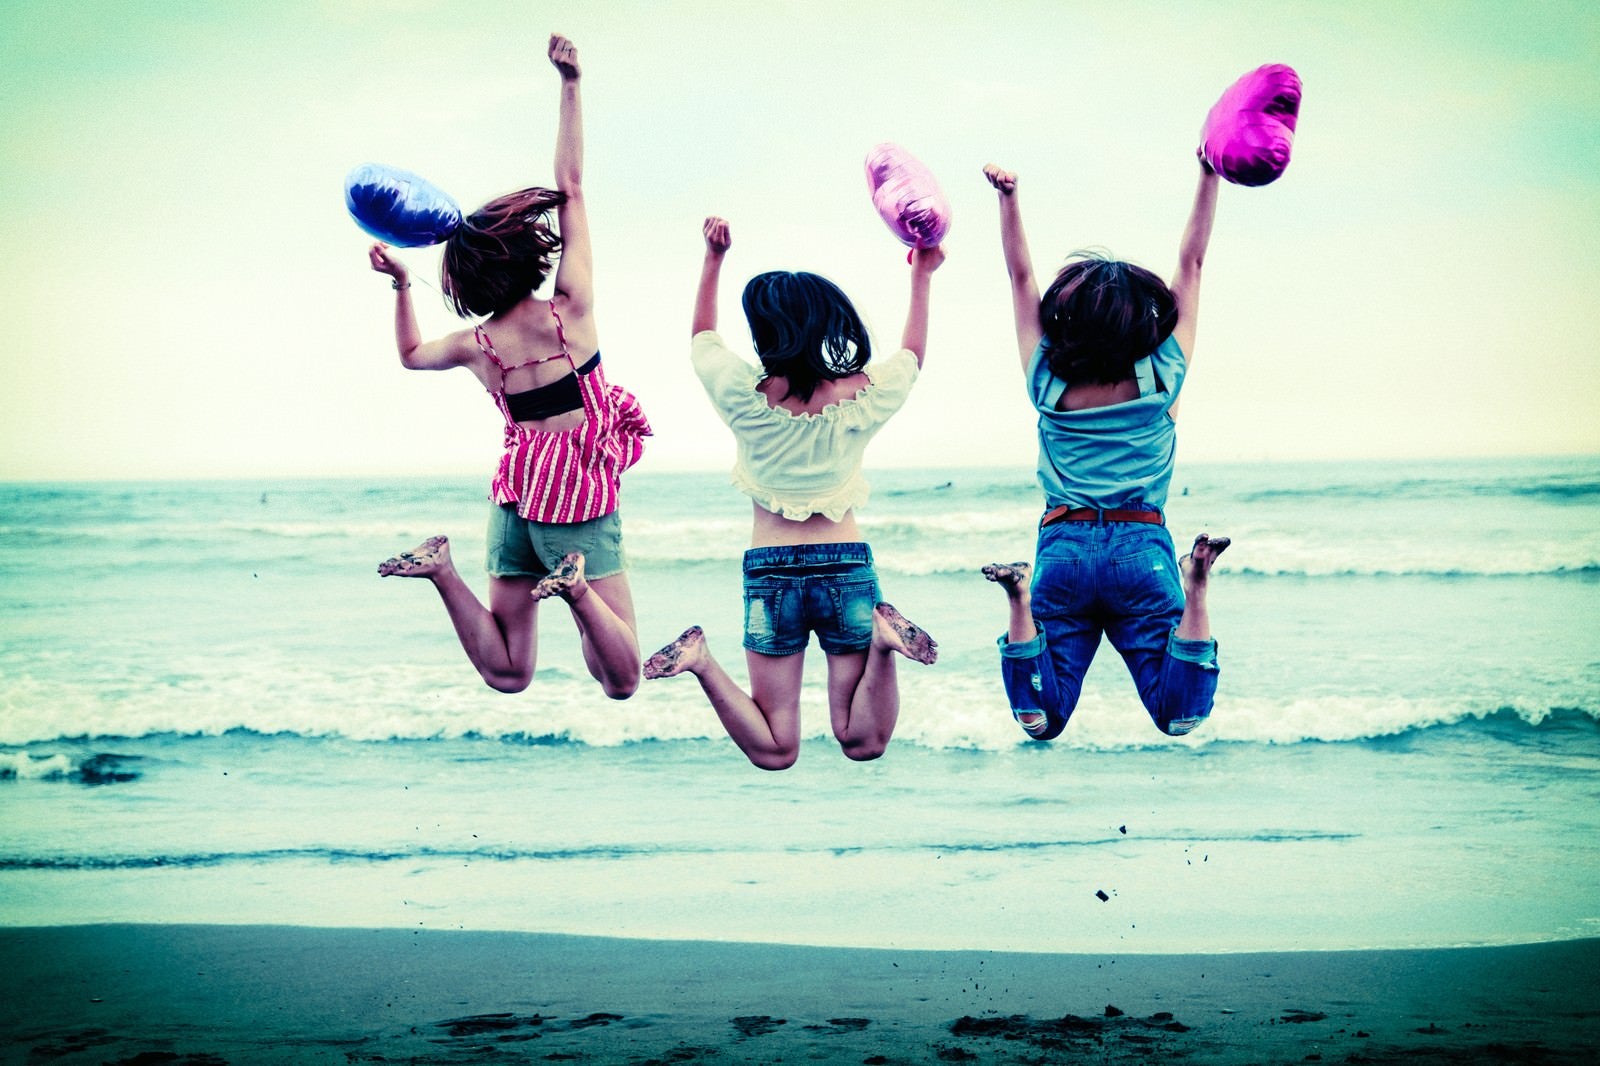 「波打ち際でジャンプするハッピーな若い女性三人組」の写真